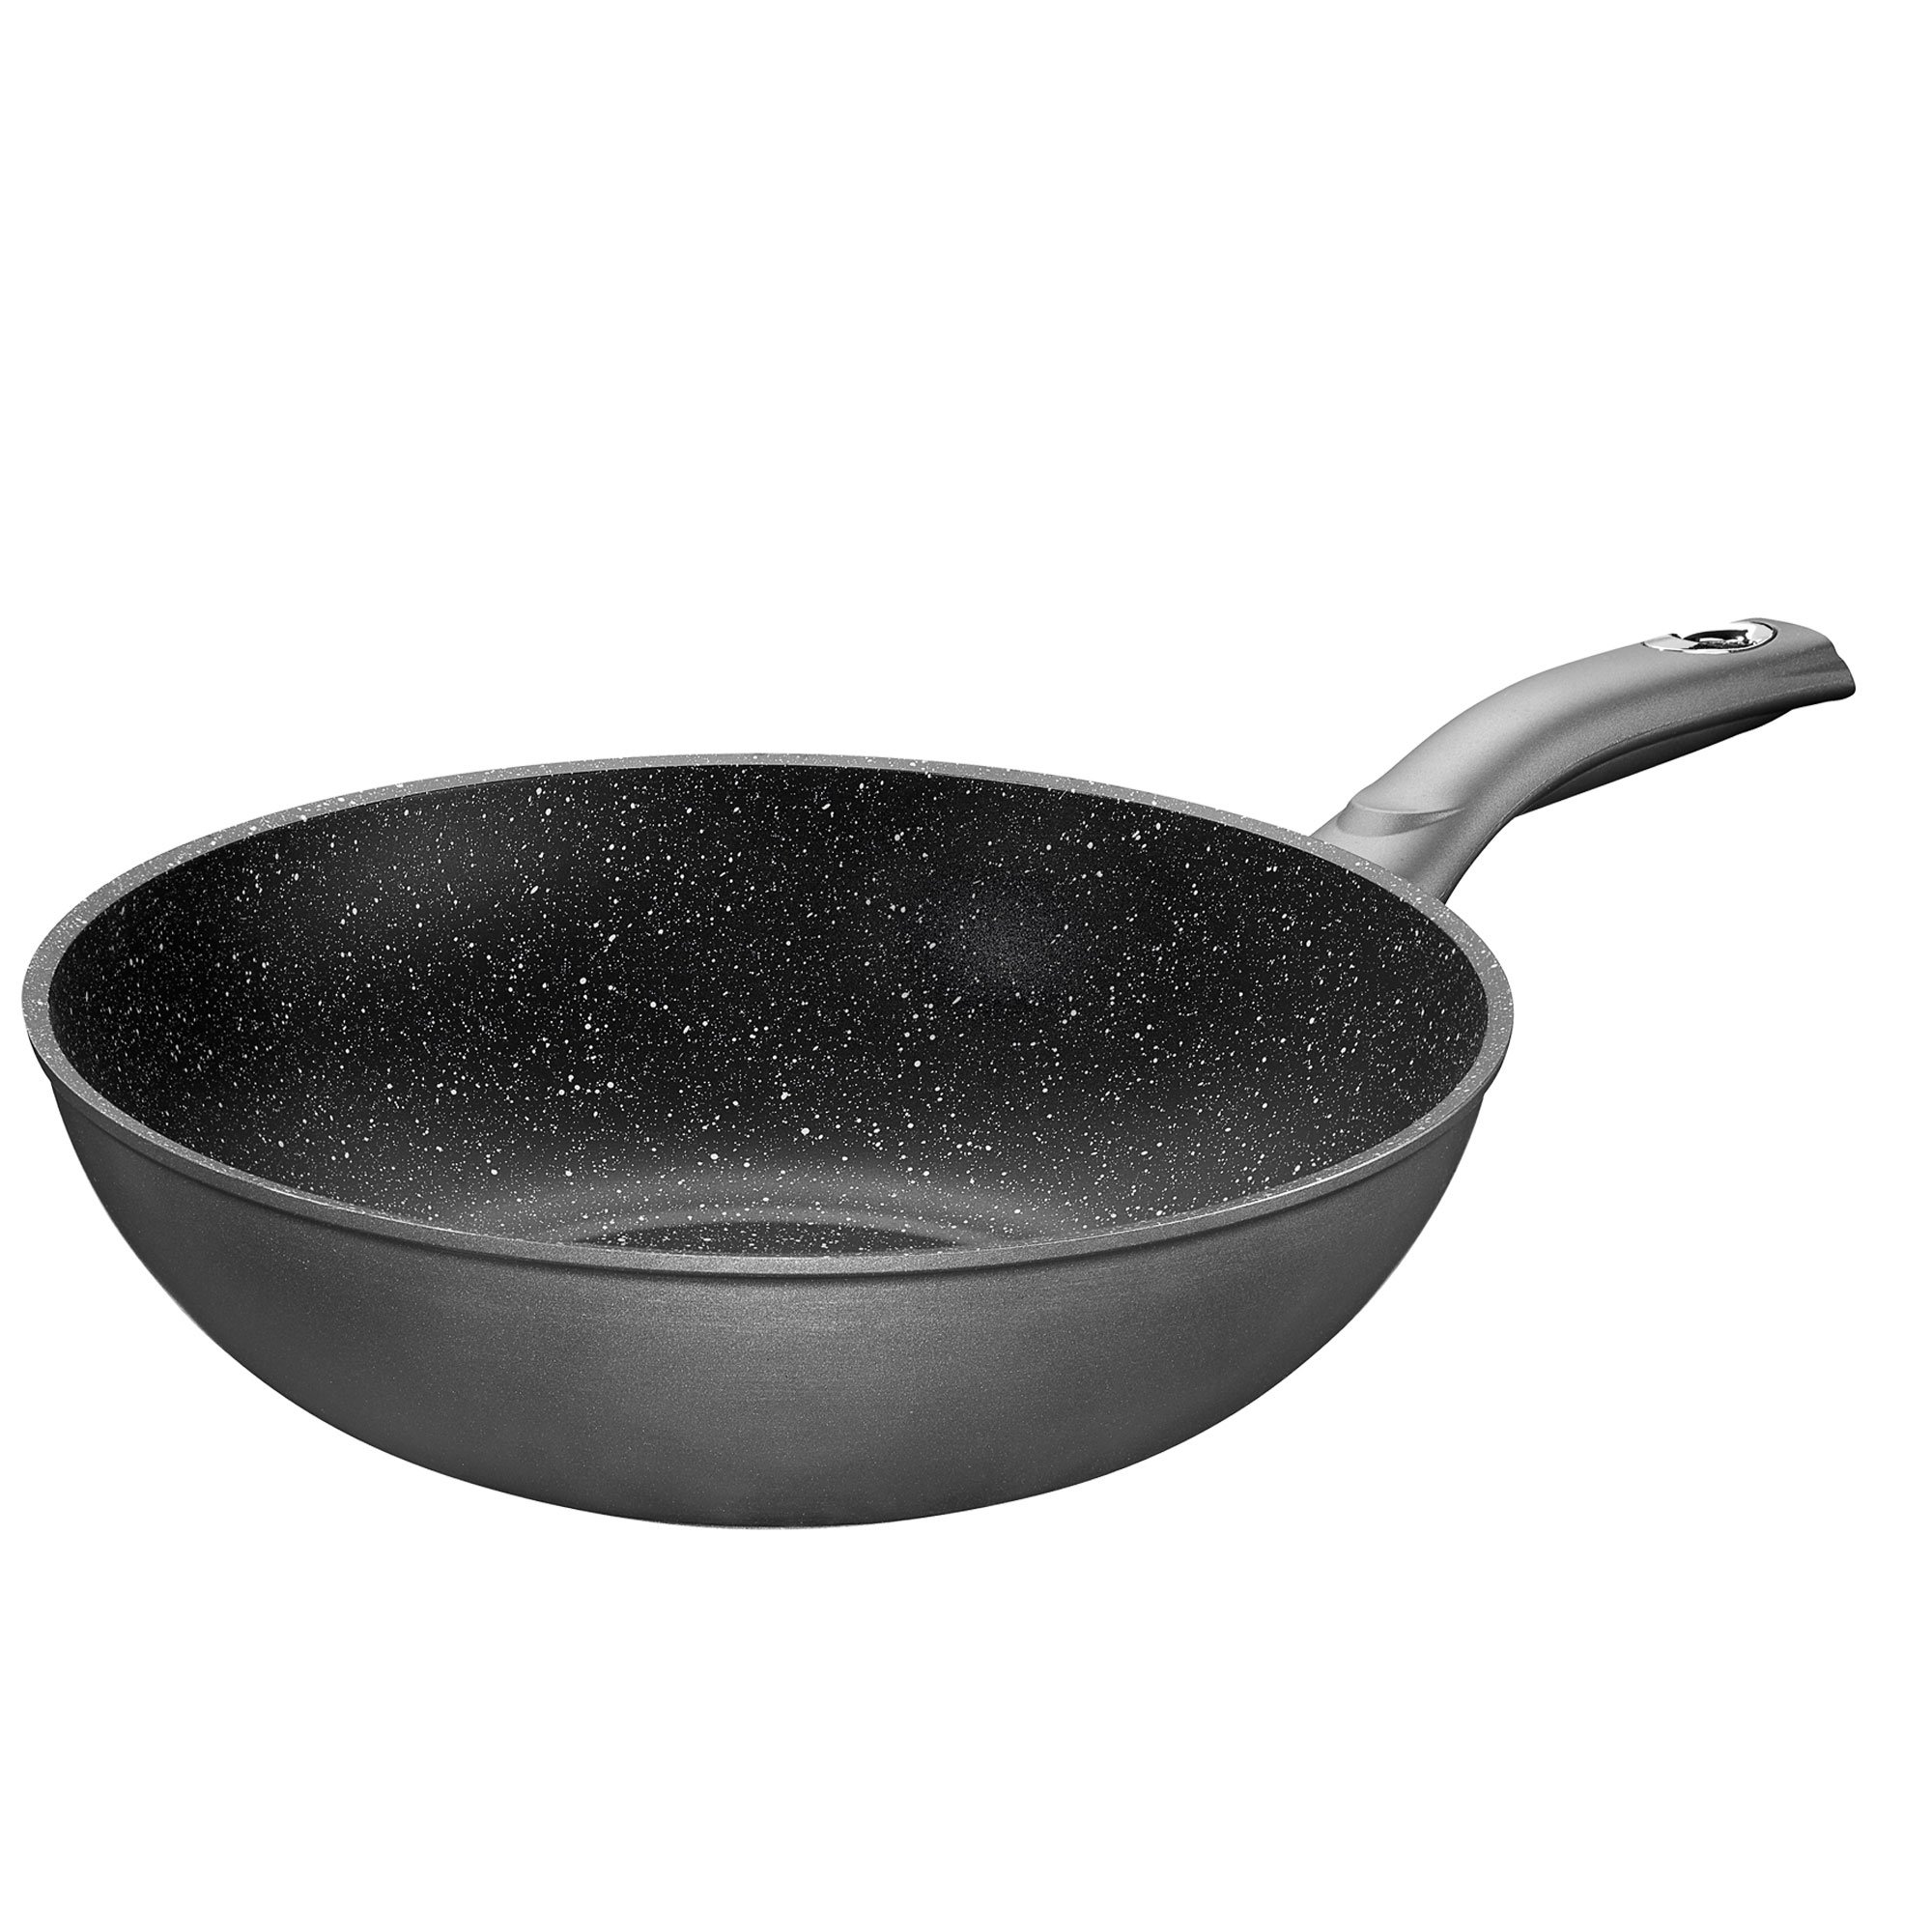 STONELINE® Gourmundo sartén wok 30 cm, Made in Germany, wok con revestimiento antiadherente, apto para inducción